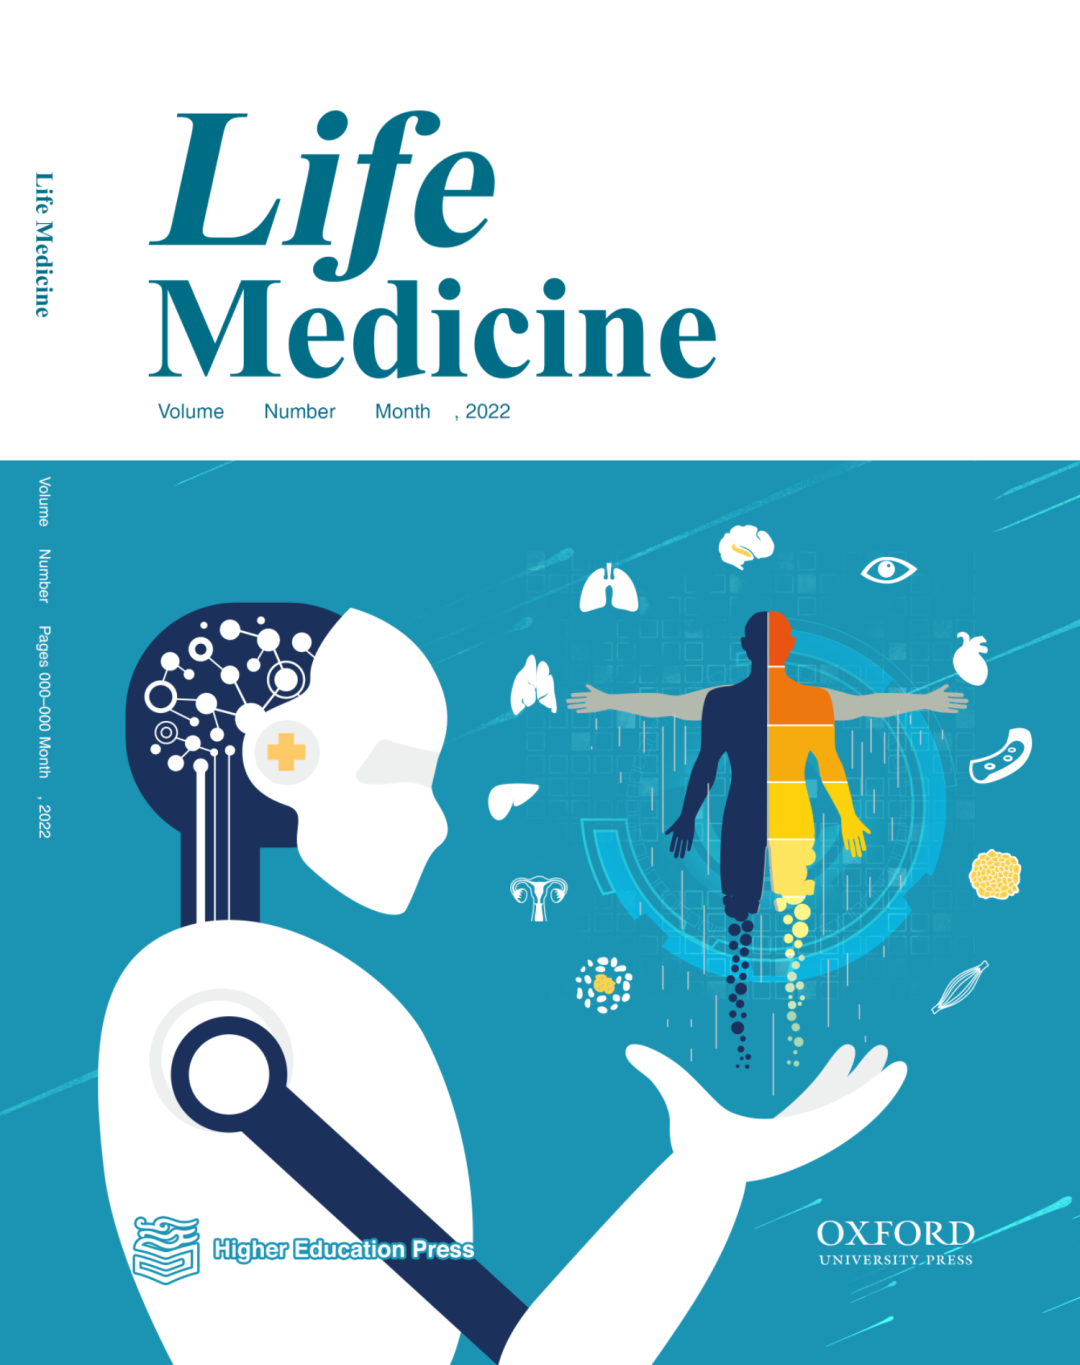 新期刊Life Medicine<font color="red">介绍</font>，诚邀投稿